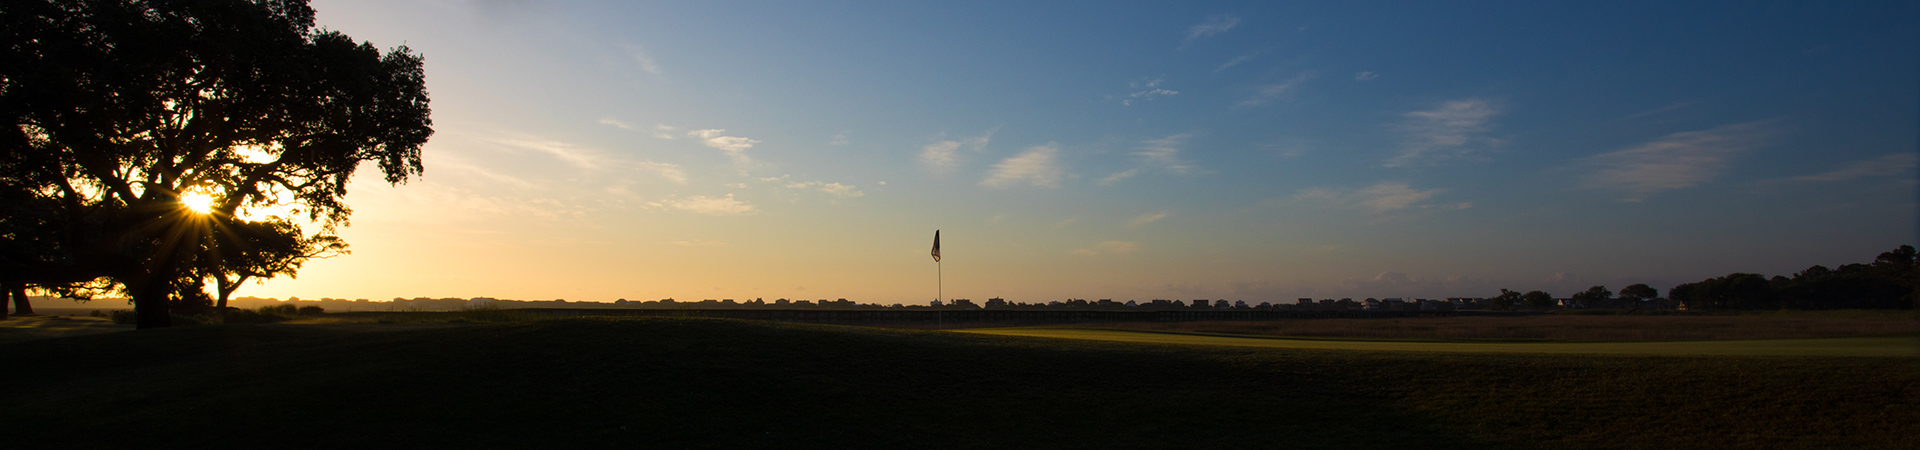 Pawleys Plantation Golf Course Sunrise